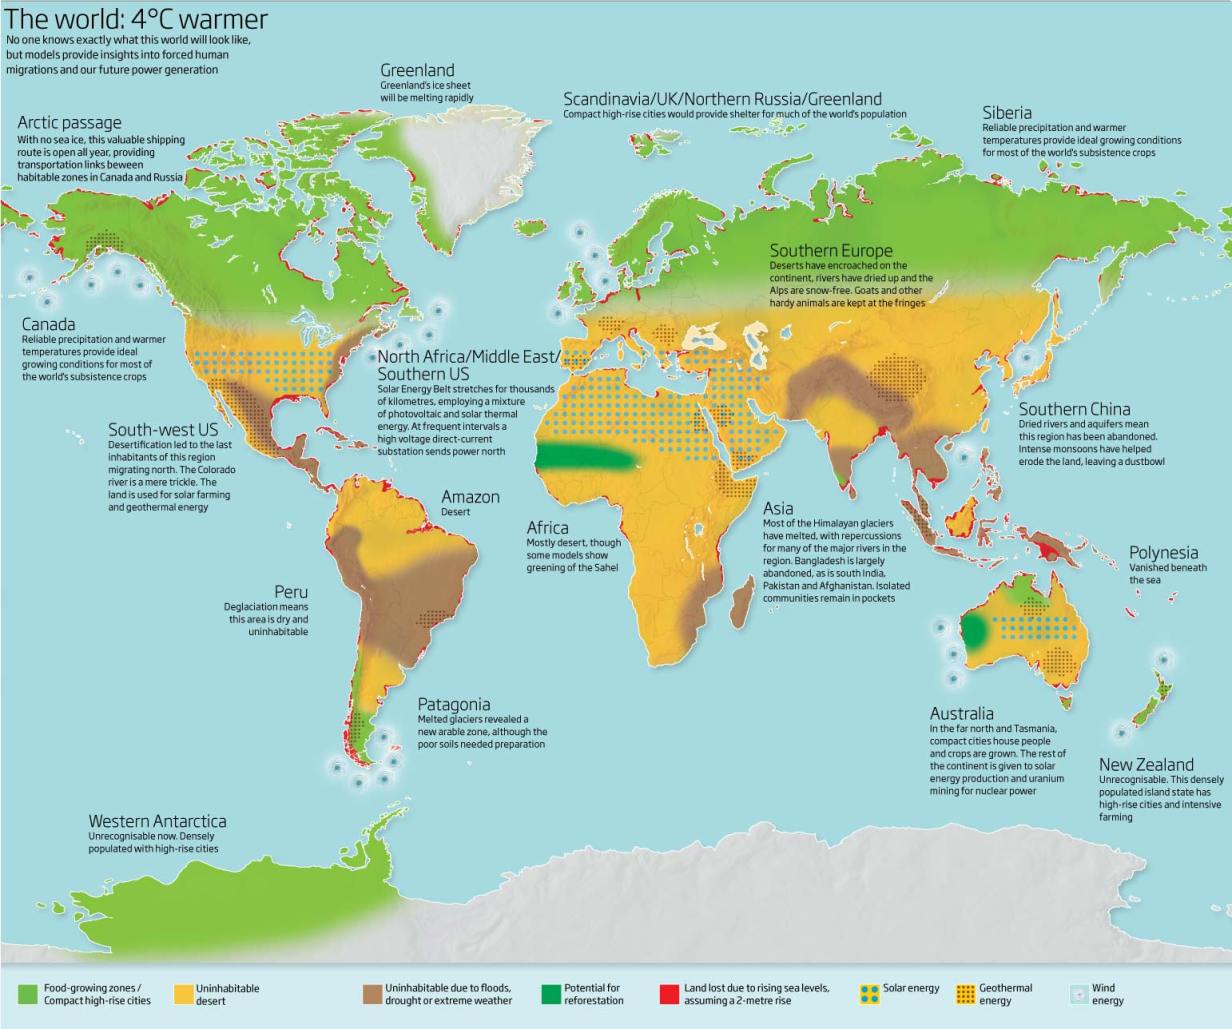 Las zonas verdes ante el cambio climático – Jardines sin fronteras